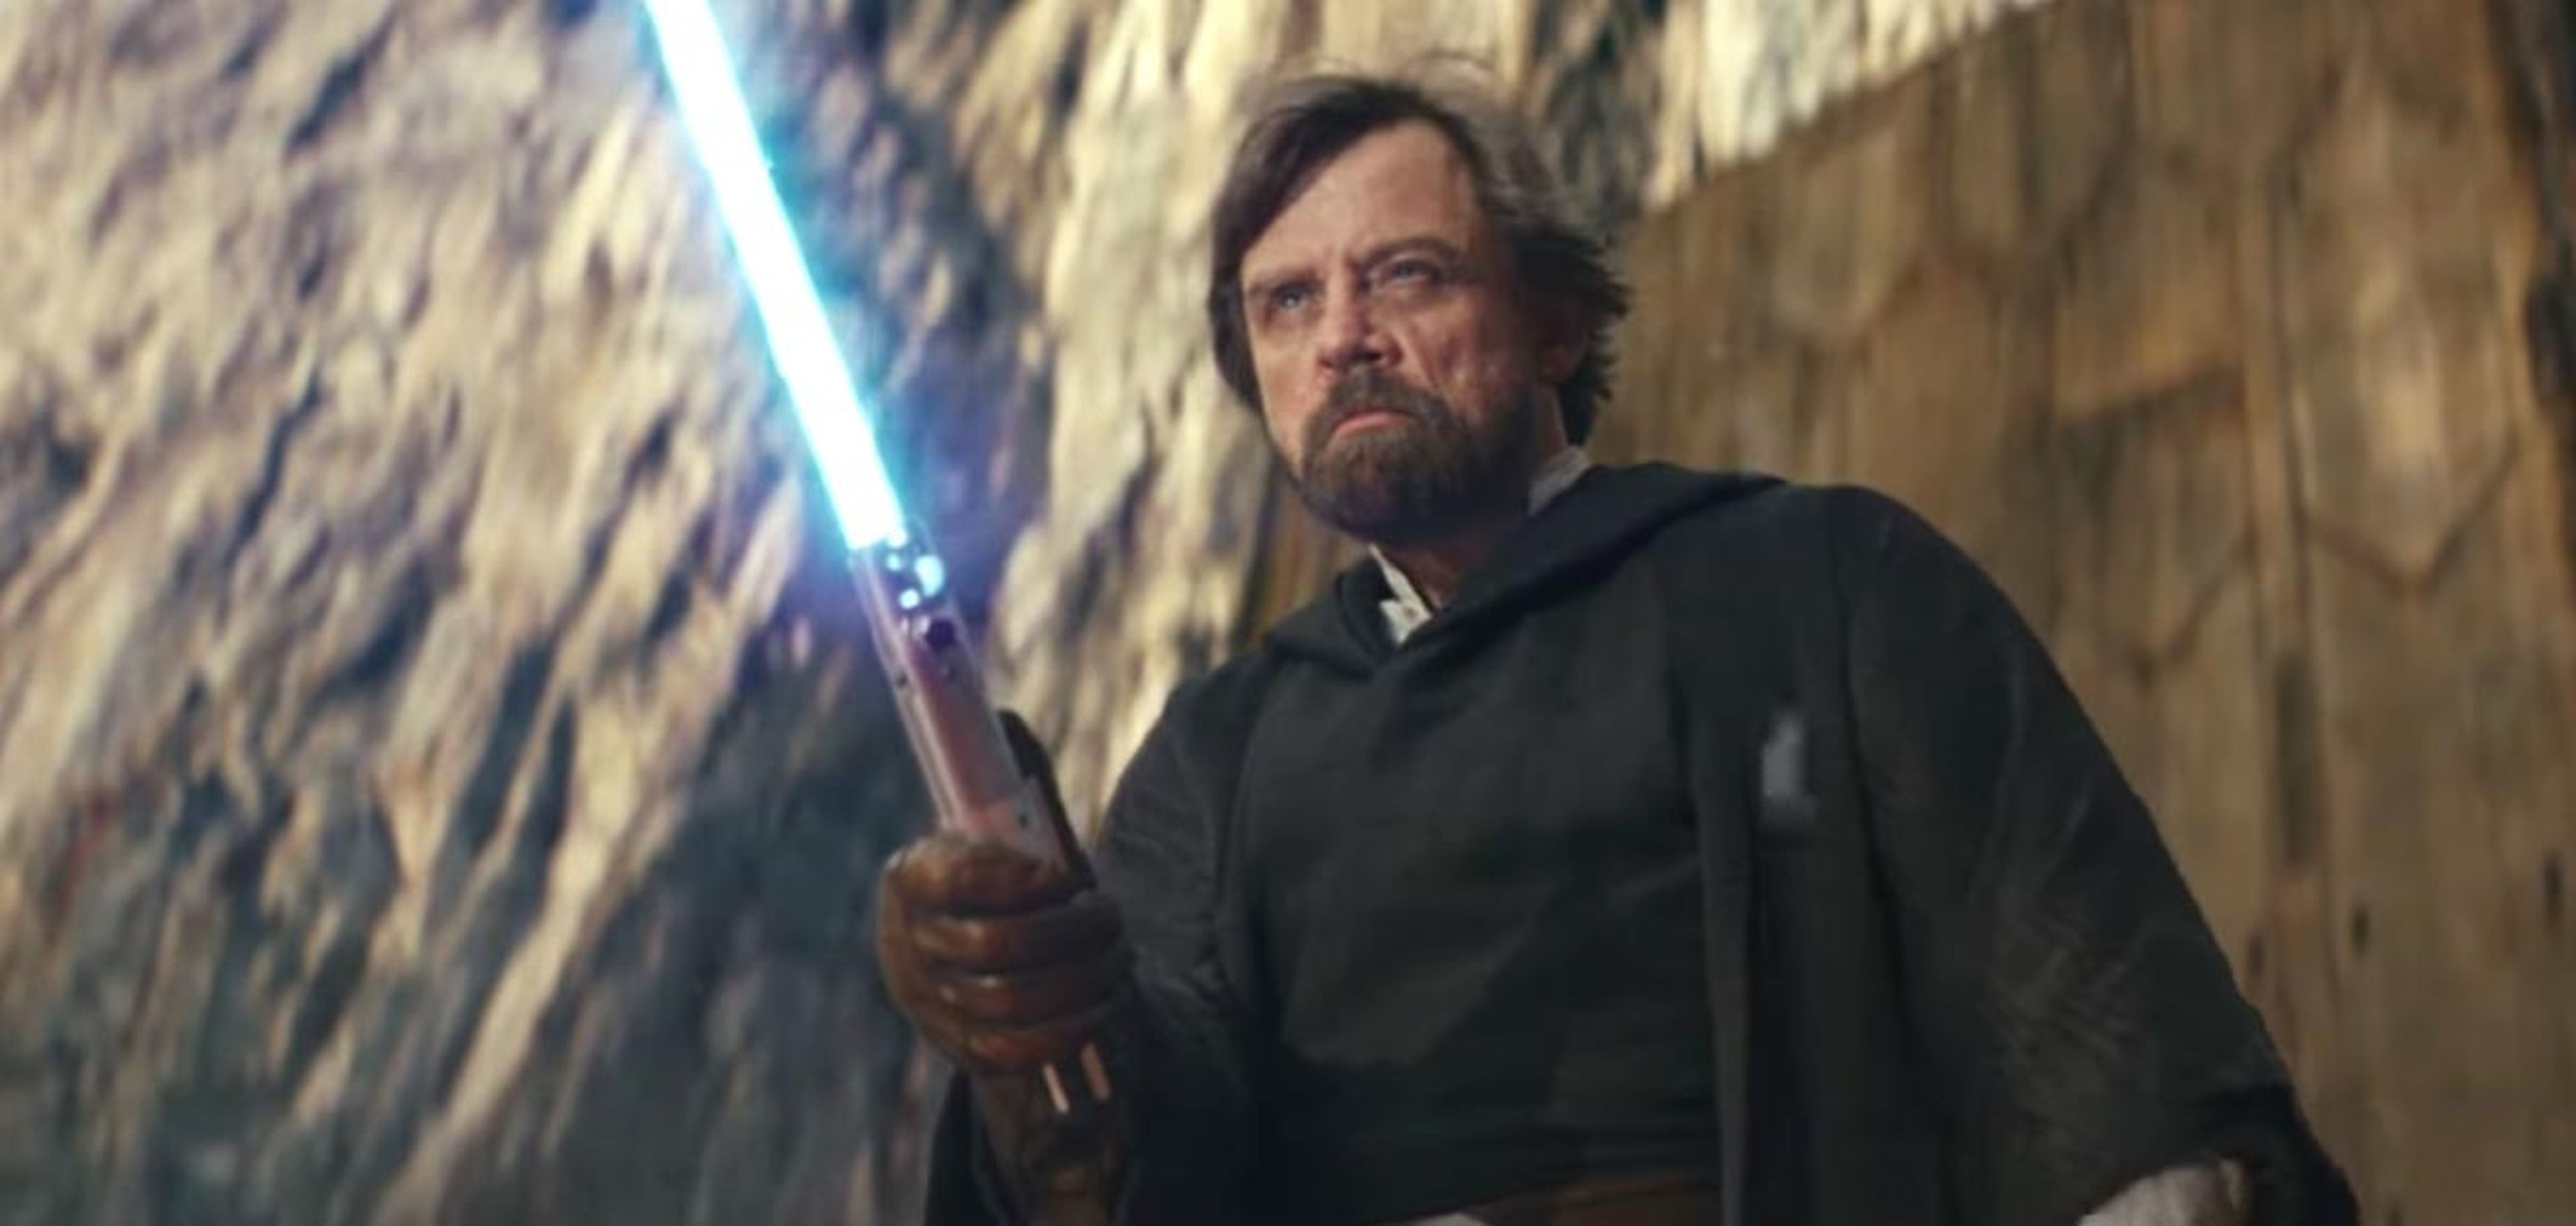 Star Wars - Qué poderes o habilidades son canónicos en los jedi